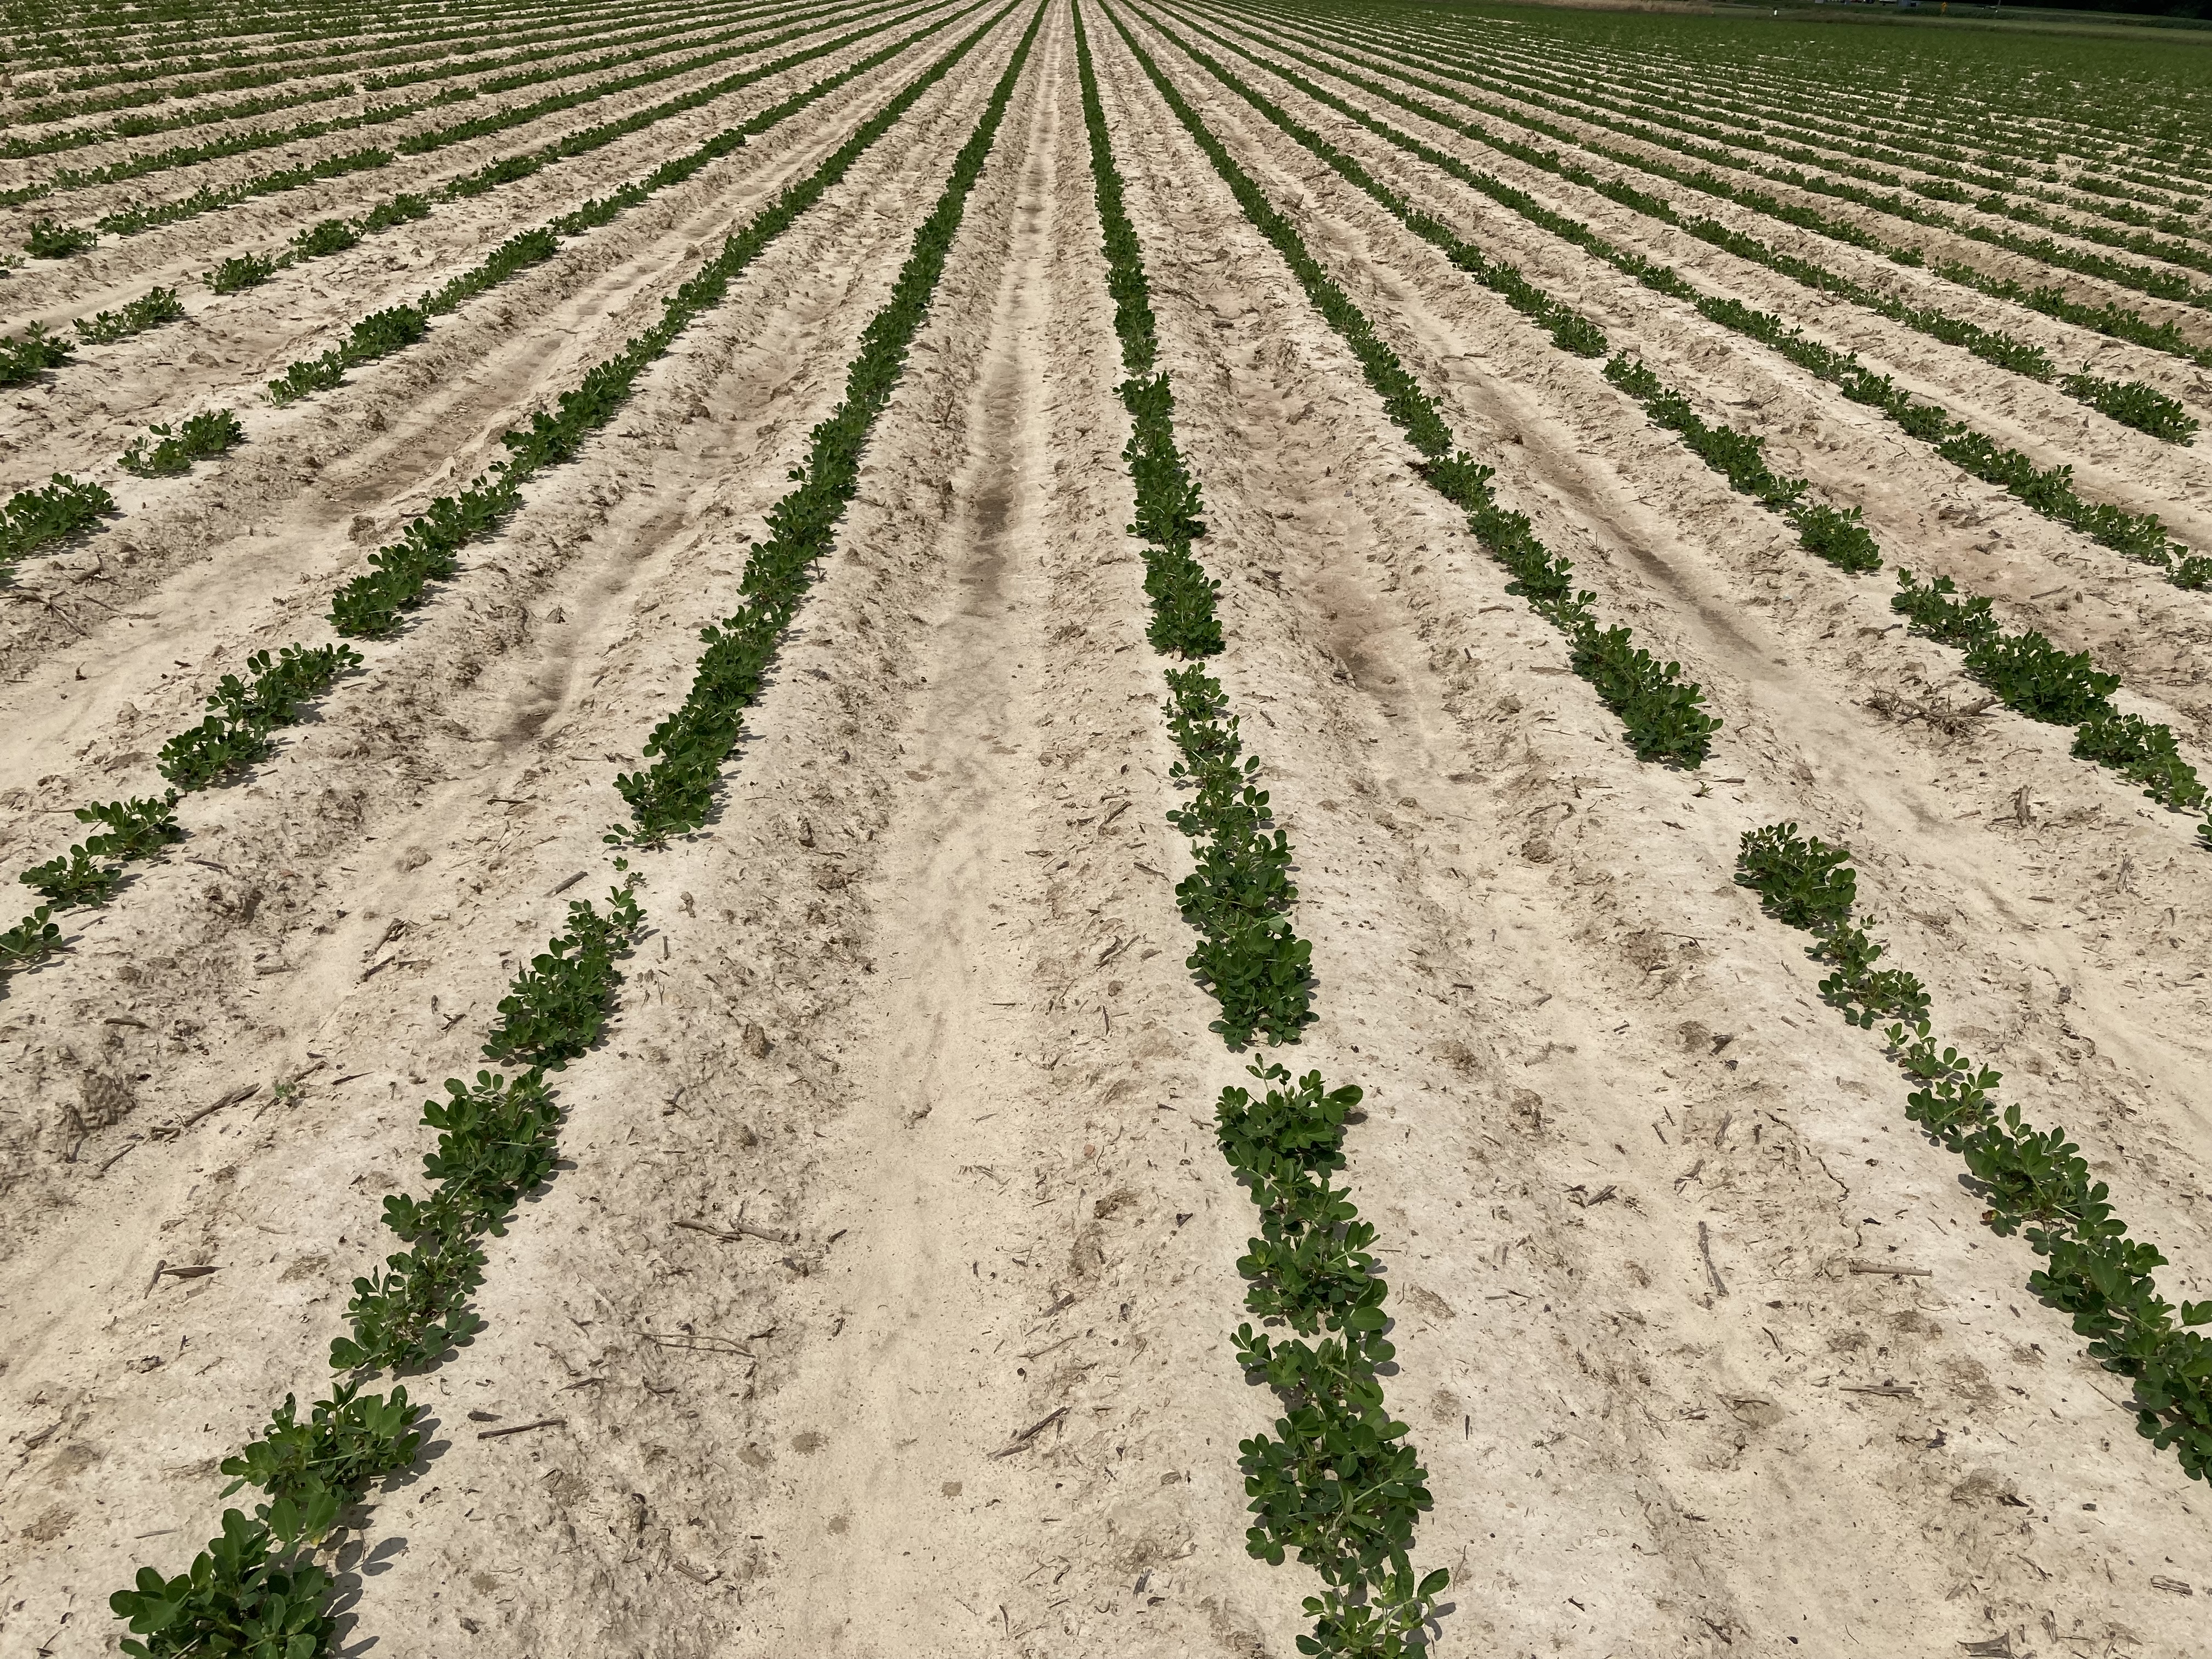 Rows of peanut in a field.